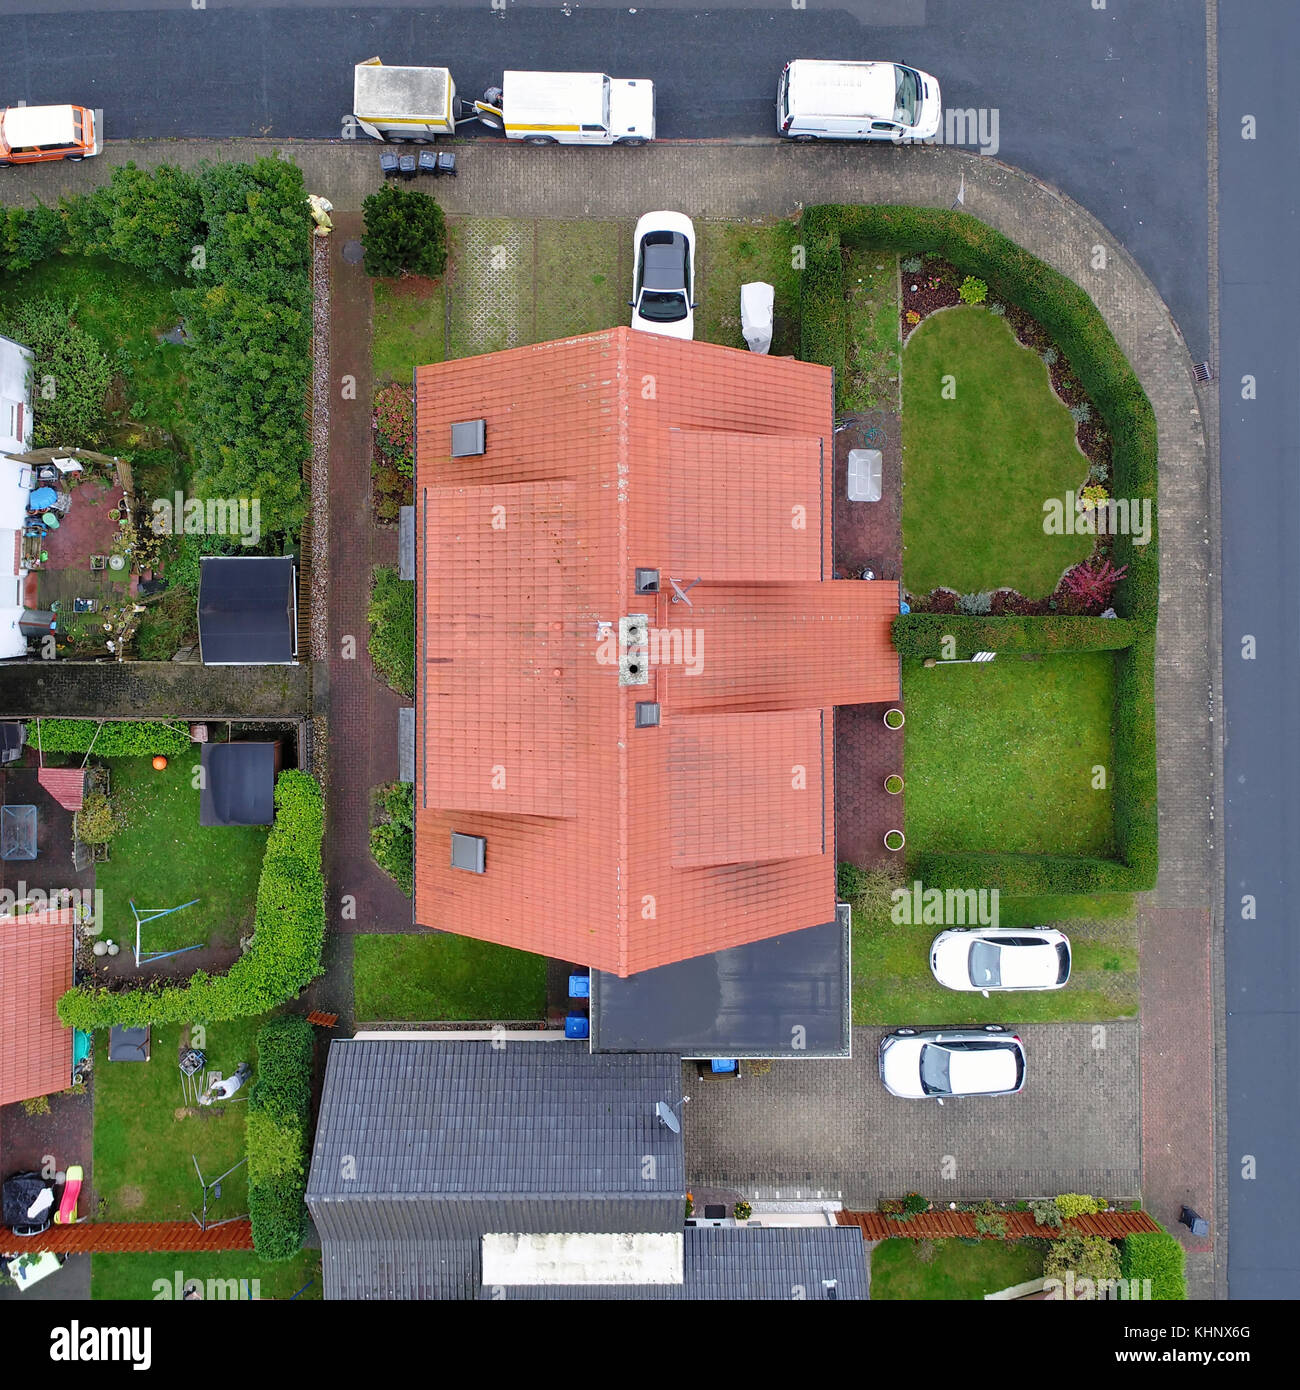 Luftbild, Apartment Gebäude in Deutschland, senkrecht von oben aufgenommen, Gärten mit typischen Deutschen Rasen, mit Drone genommen Stockfoto